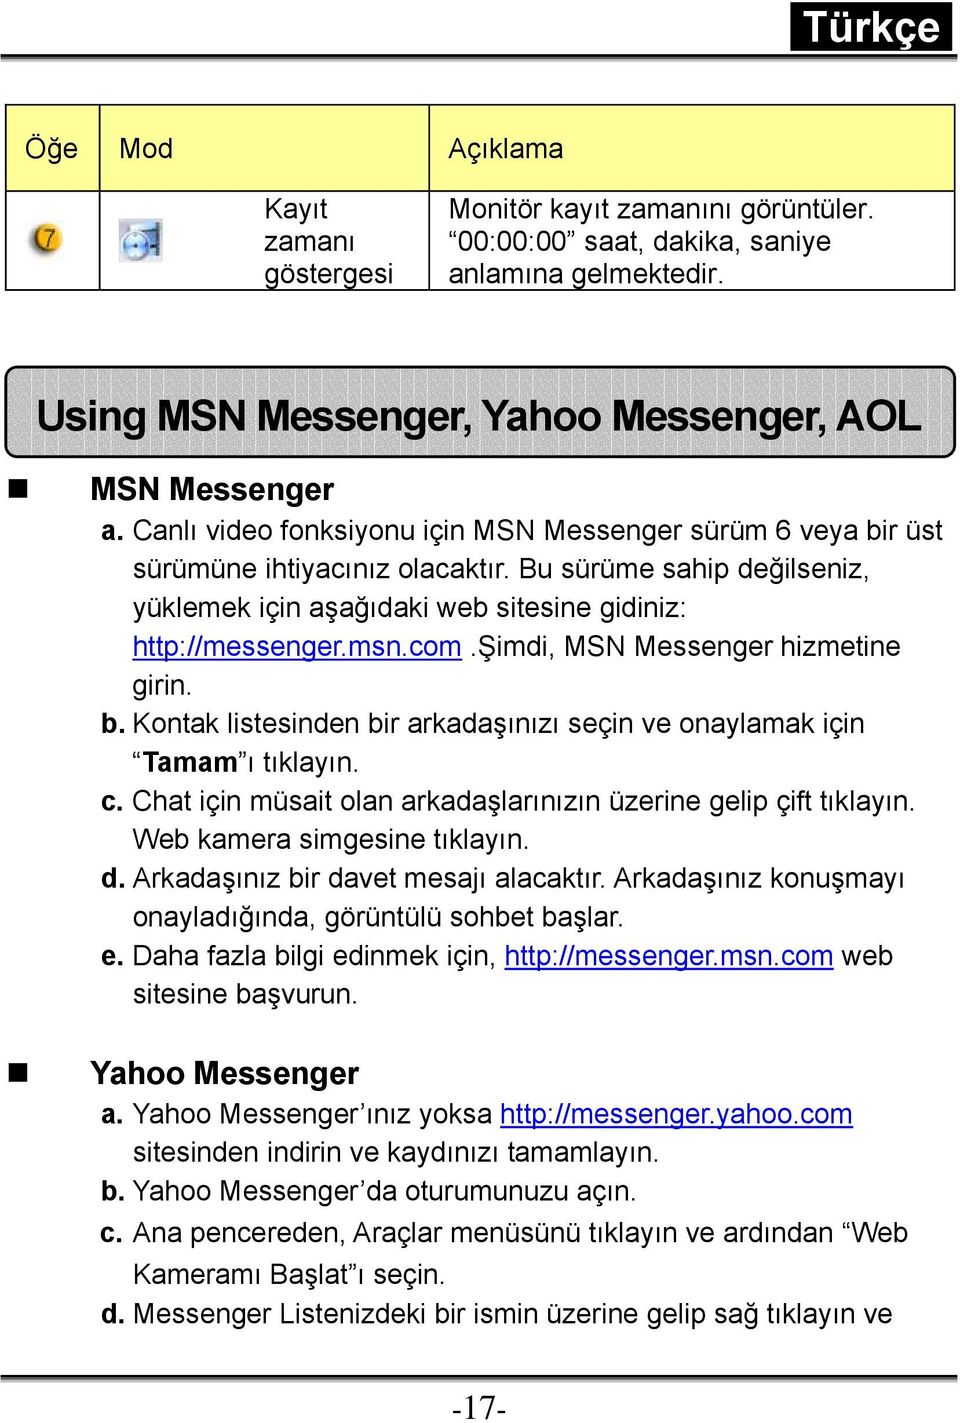 şimdi, MSN Messenger hizmetine girin. b. Kontak listesinden bir arkadaşınızı seçin ve onaylamak için Tamam ı tıklayın. c. Chat için müsait olan arkadaşlarınızın üzerine gelip çift tıklayın.